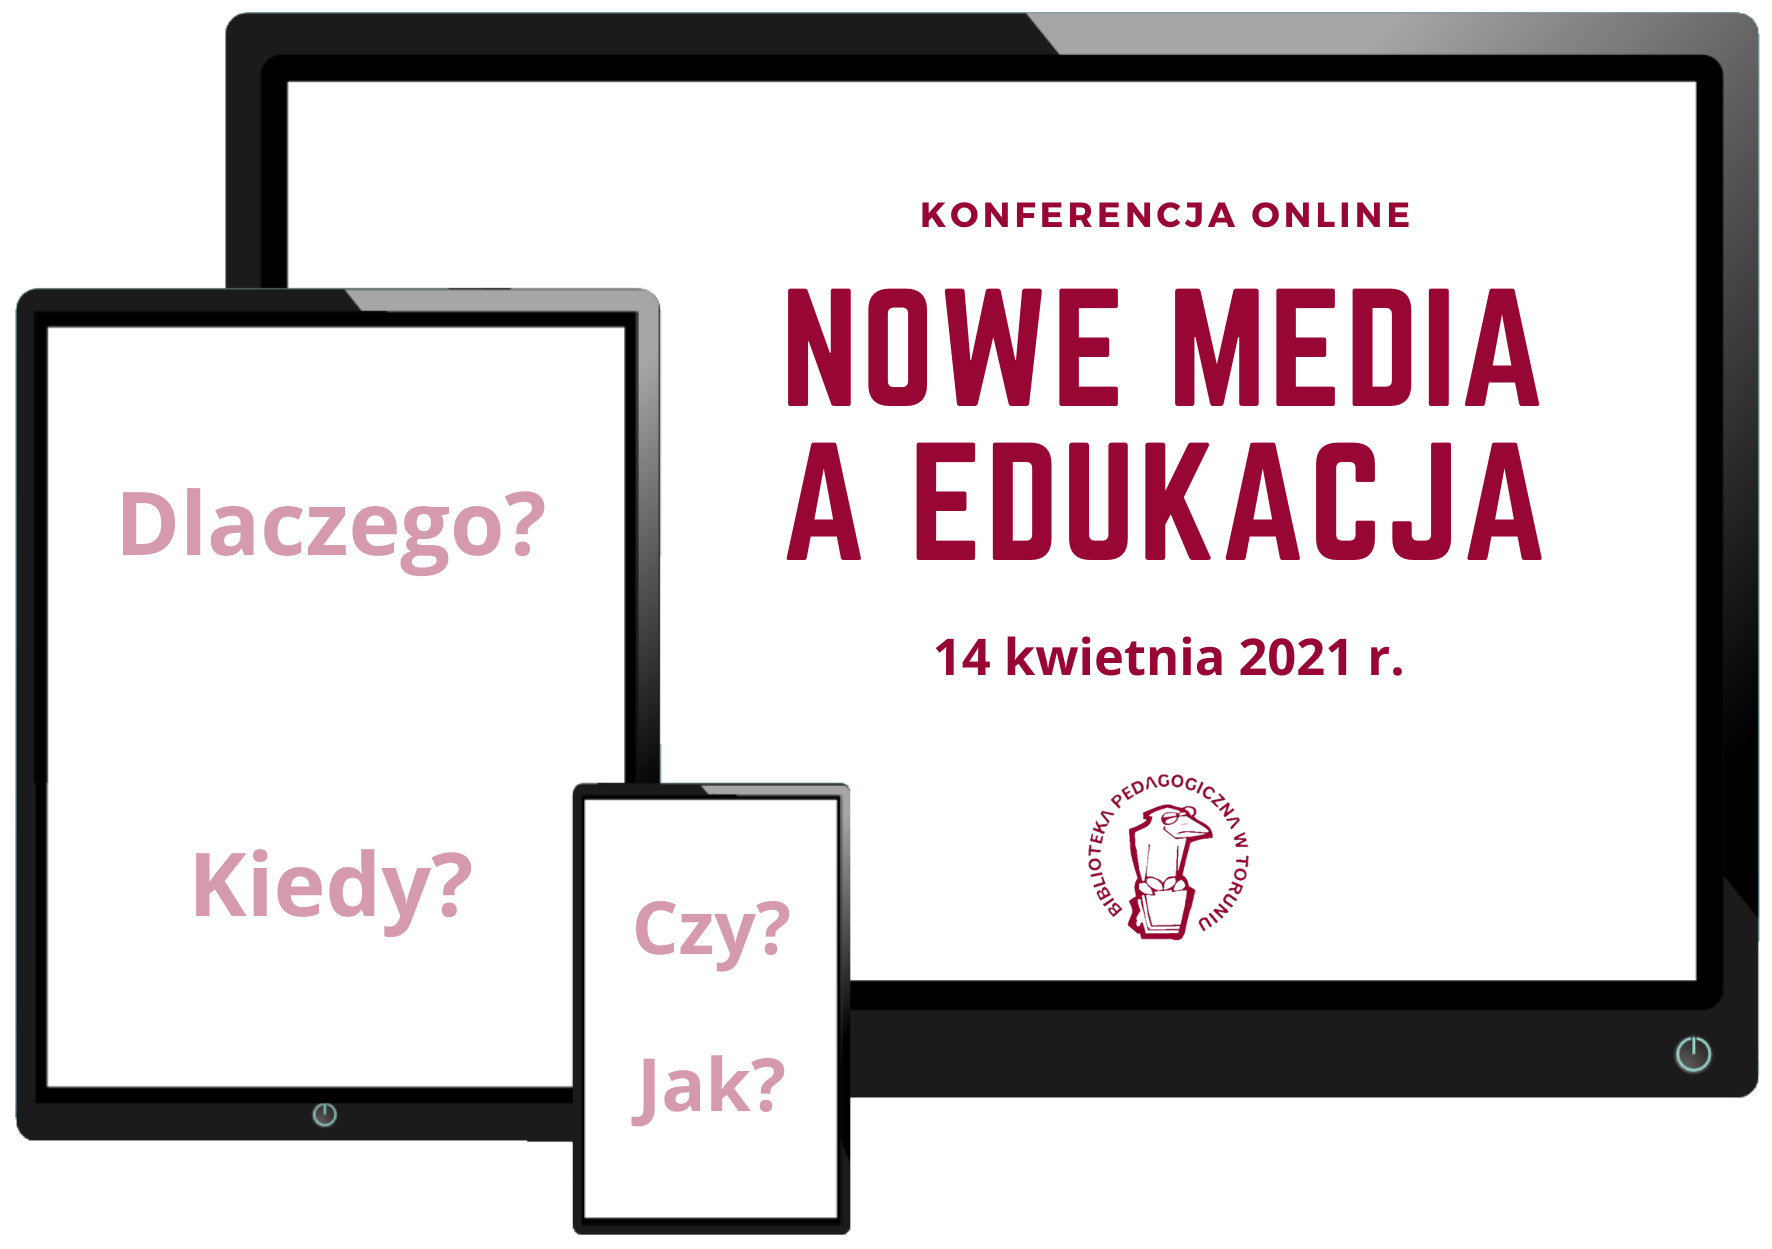 Logo konferecncji online: Nowe media a edukacja. Widoczne ekrany trzech urządzeń elektronicznych: monitora komputerowego, tabletu i smartfona.